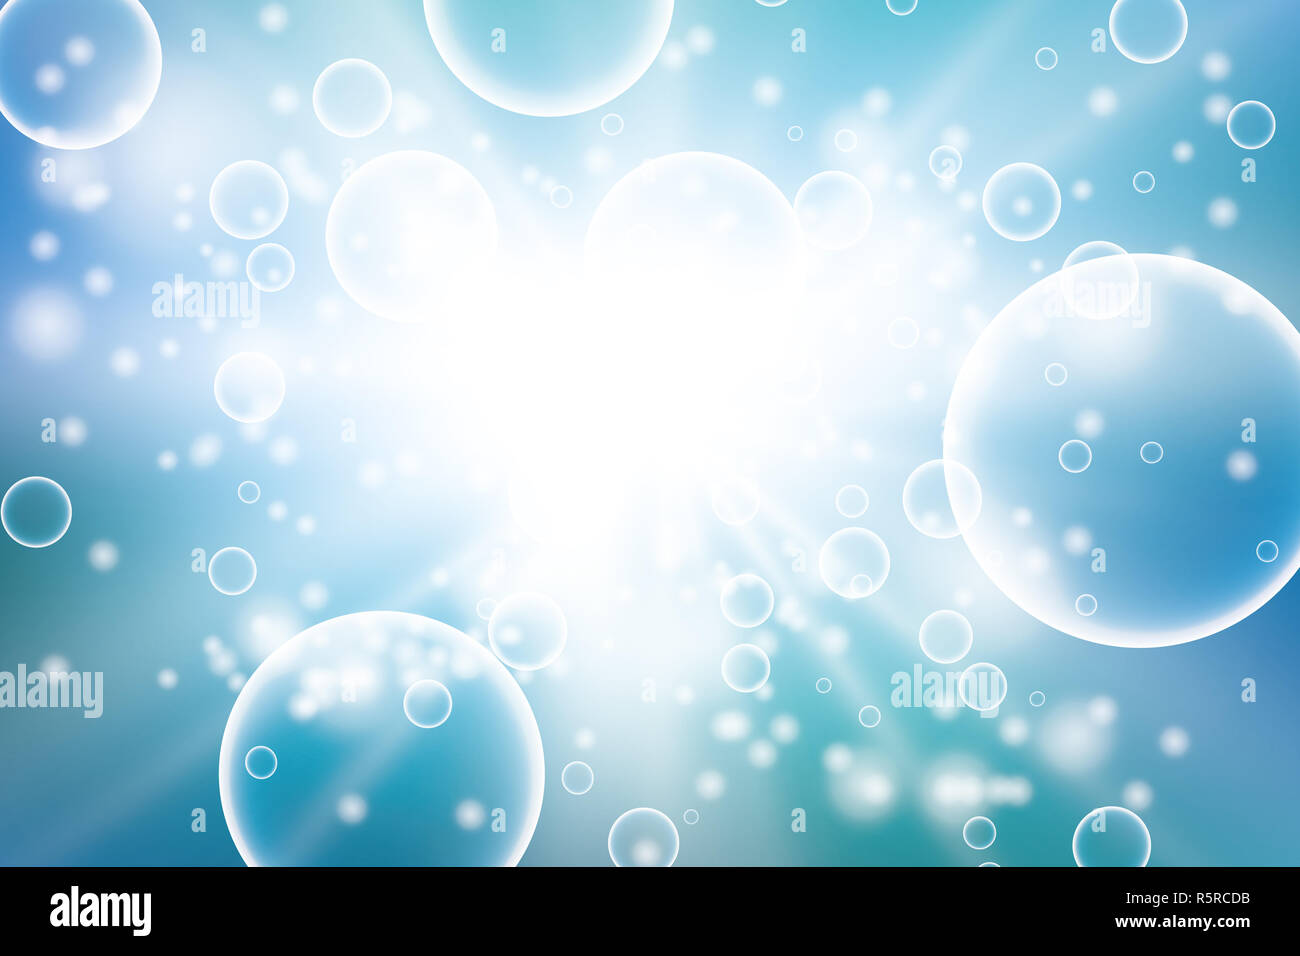 Bulles d'oxygène dans l'eau blue background scientifique et concepts biologiques. Cercle Transparent, sphere ball, de l'eau mer ou océan, vector illustration Banque D'Images